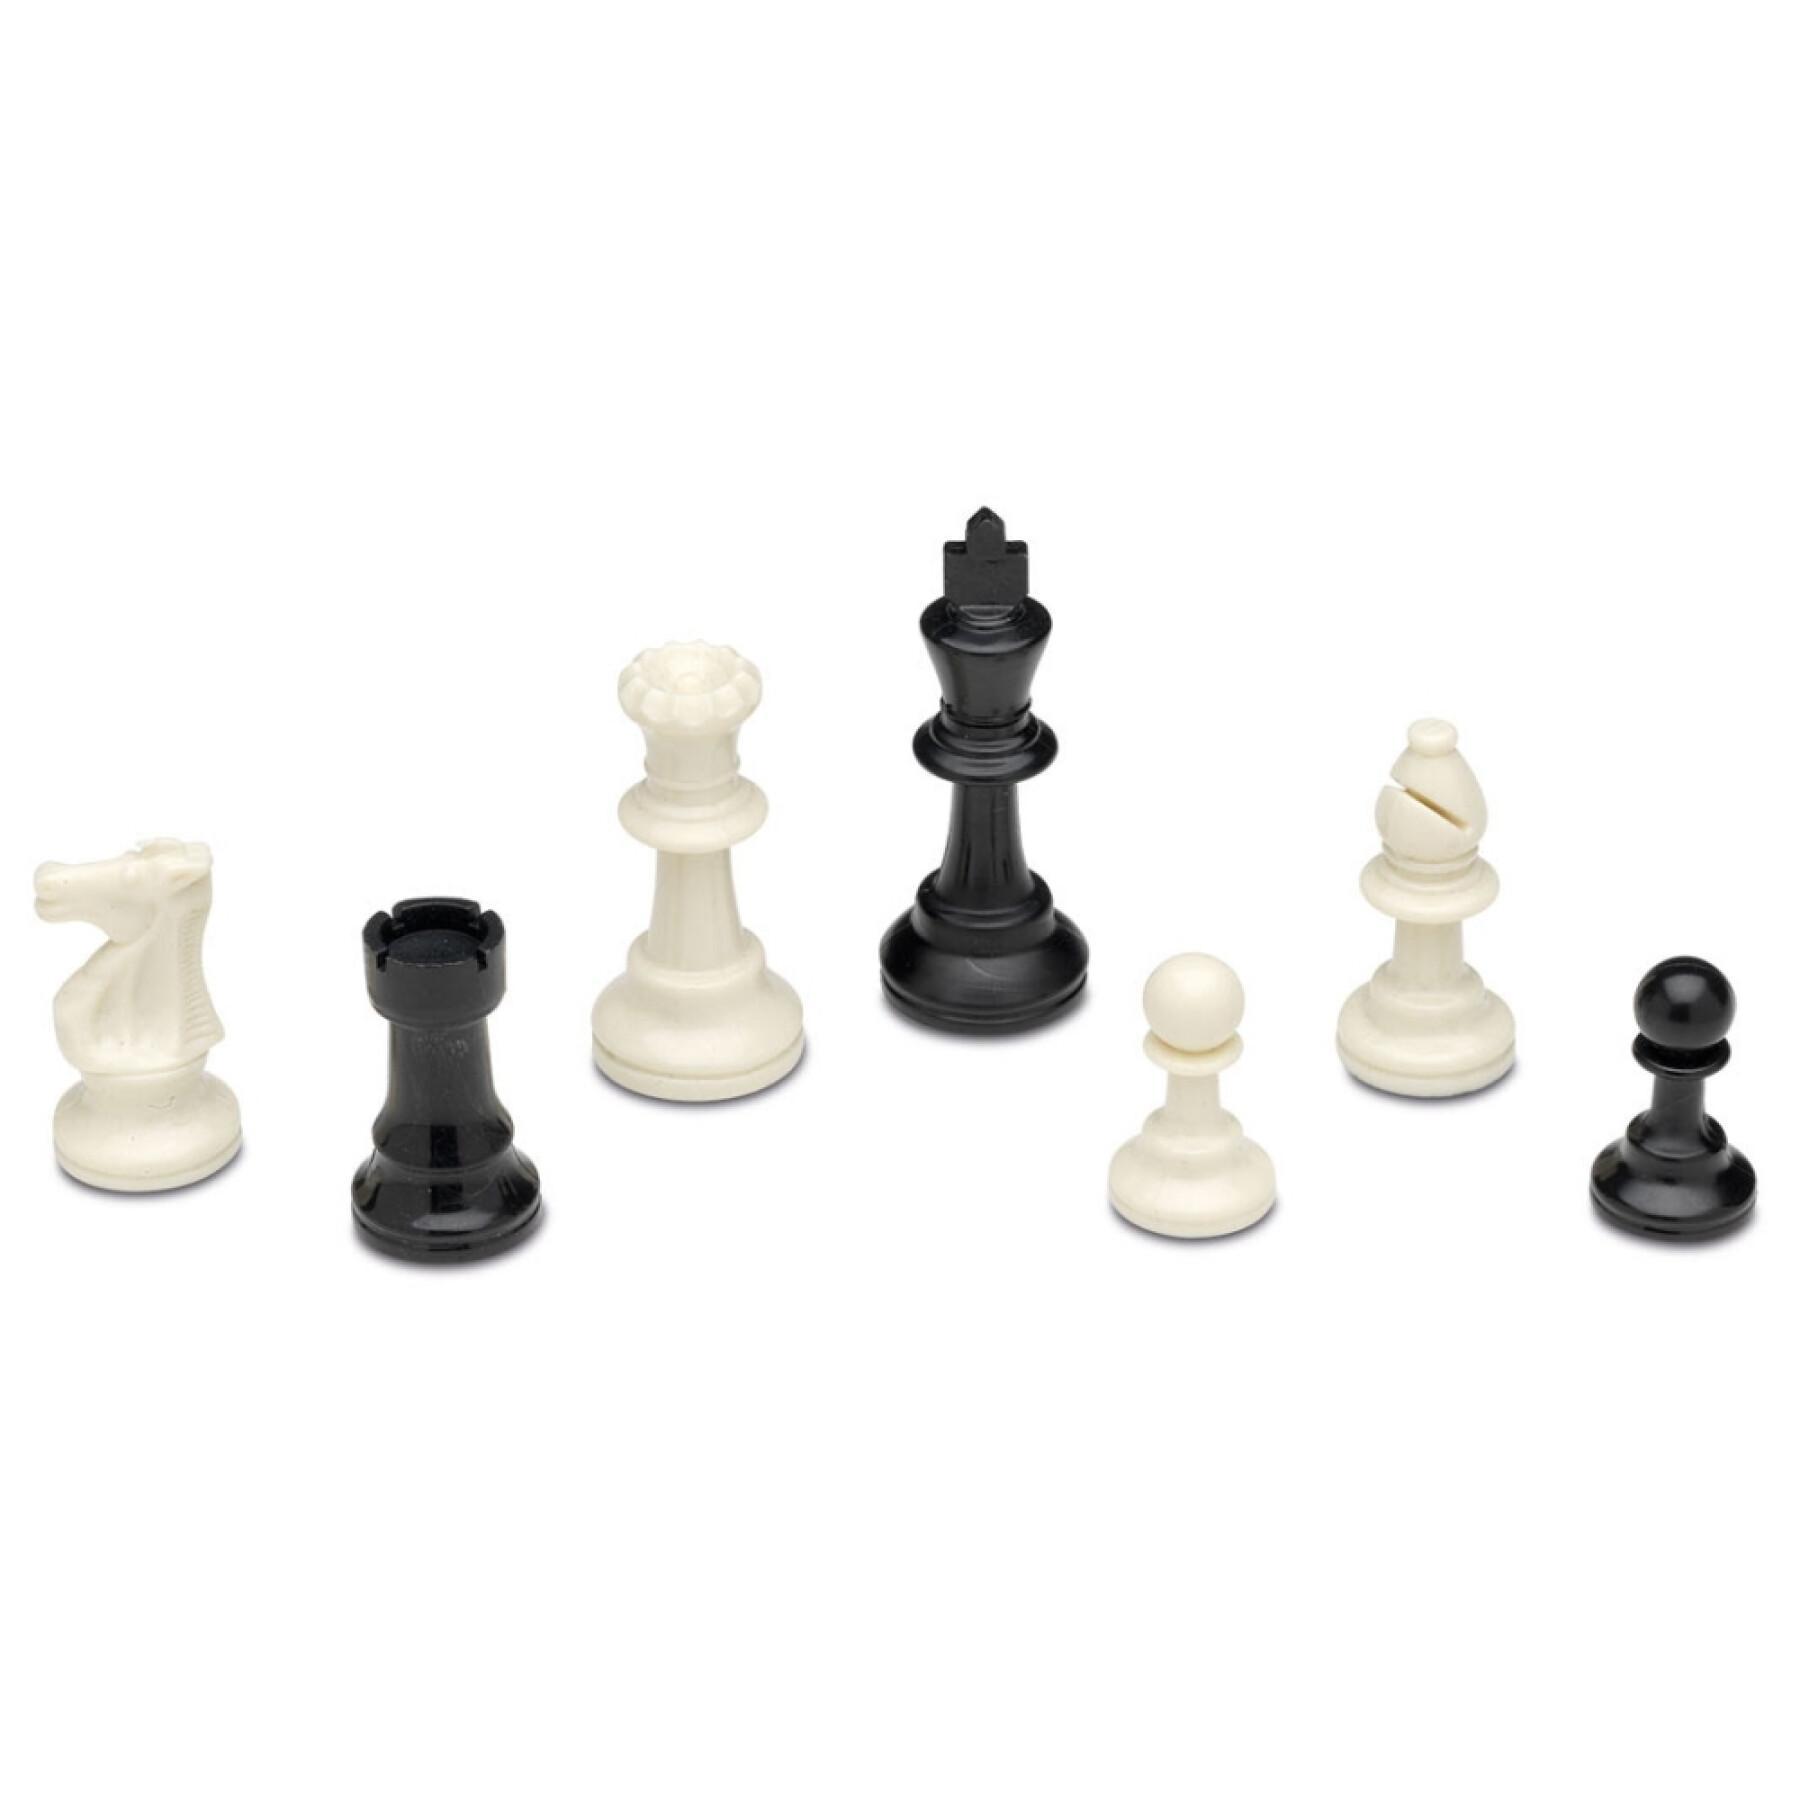 Pieza de ajedrez n°3 con estuche de madera Cayro